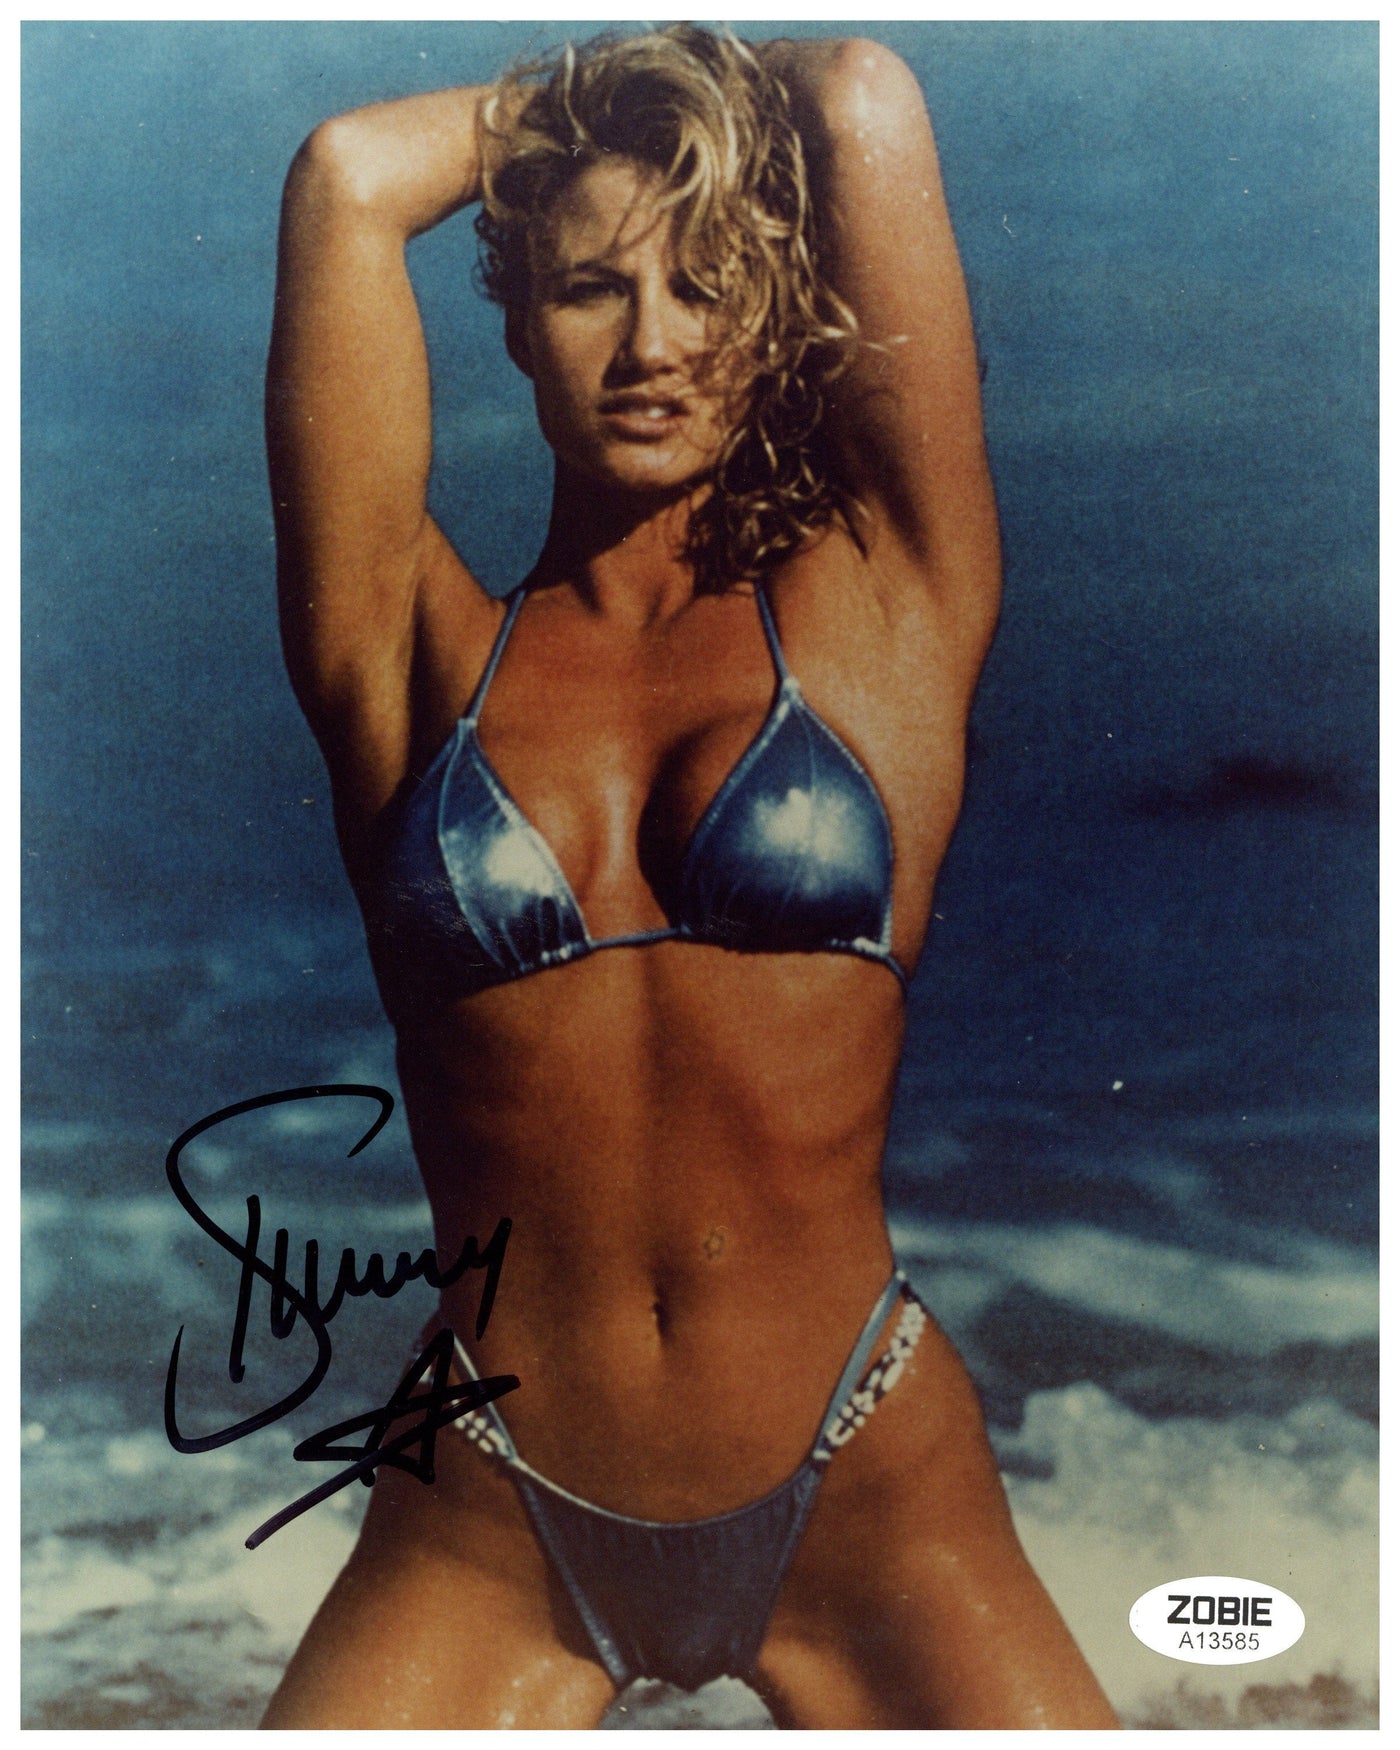 Sunny Signed 8x10 Photo WWF Attitude Era WWE Authentic Autographed Zobie COA